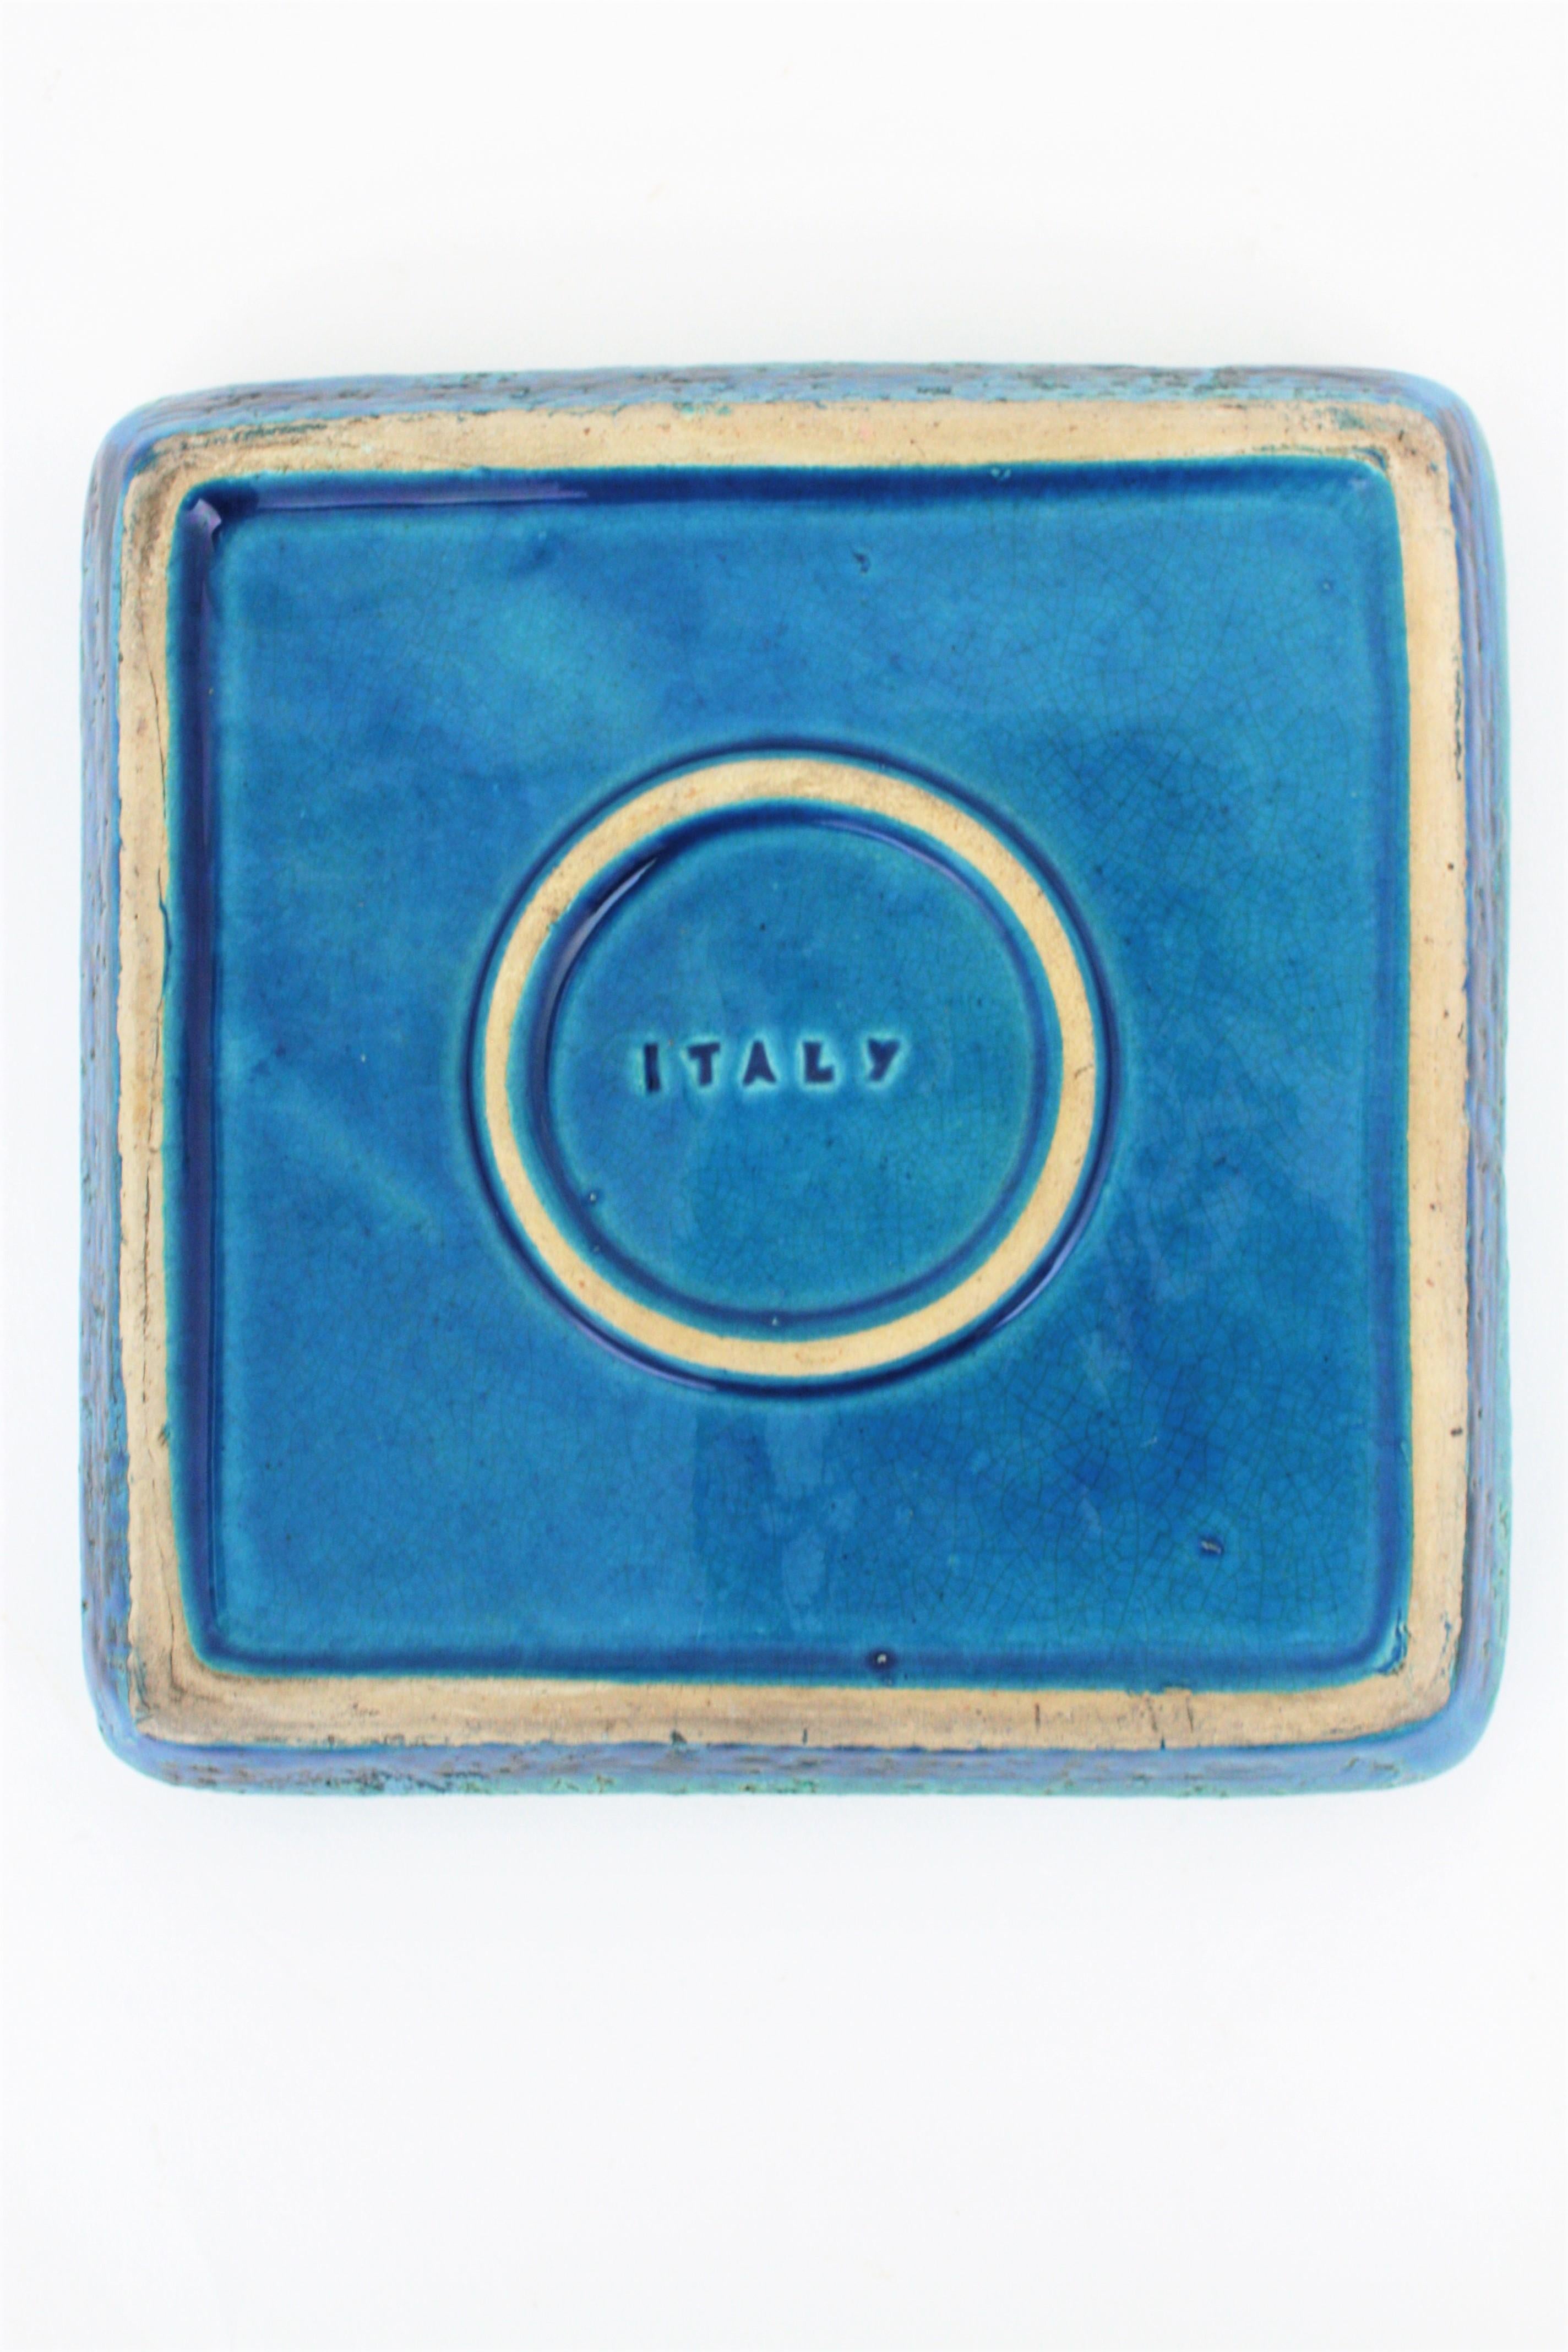 Aldo Londi for Bitossi Rimini Blue Glazed Ceramic Square Ashtray, Italy, 1960s 7